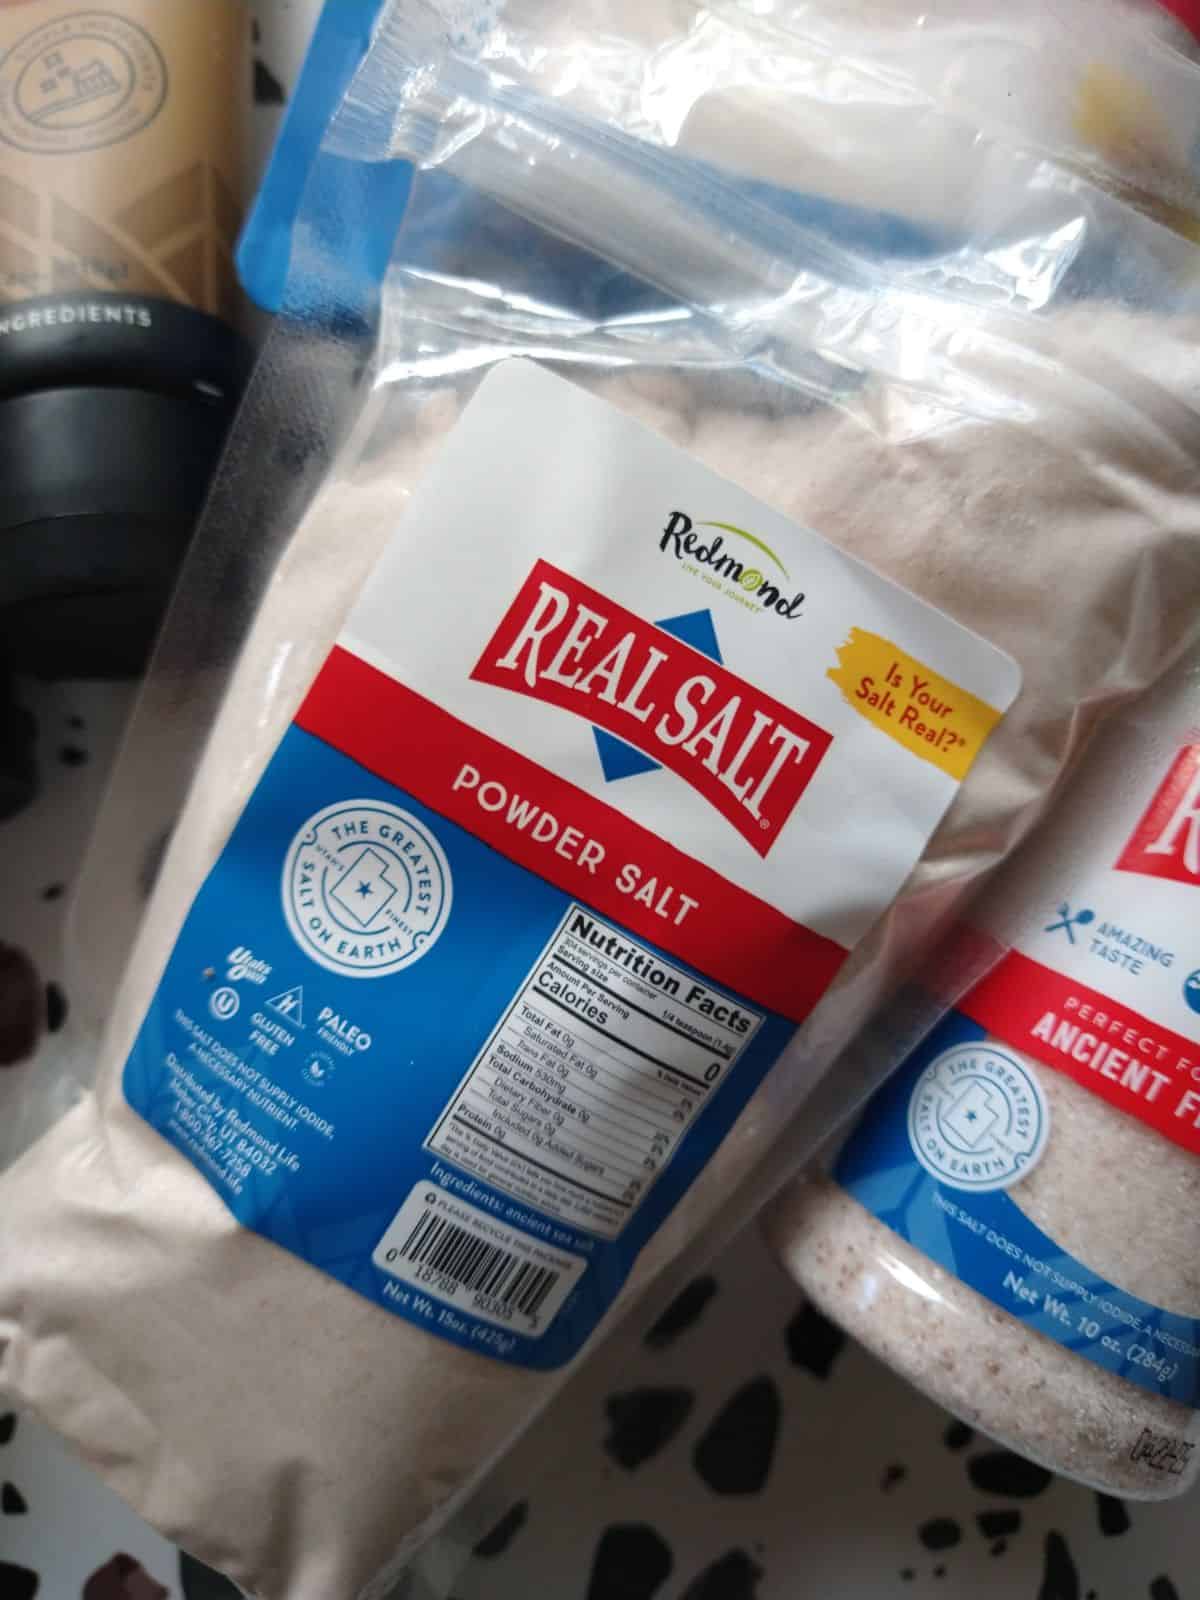 A bag of Redmond Real Salt Powder Salt sitting next to a Redmond Real Salt shaker.